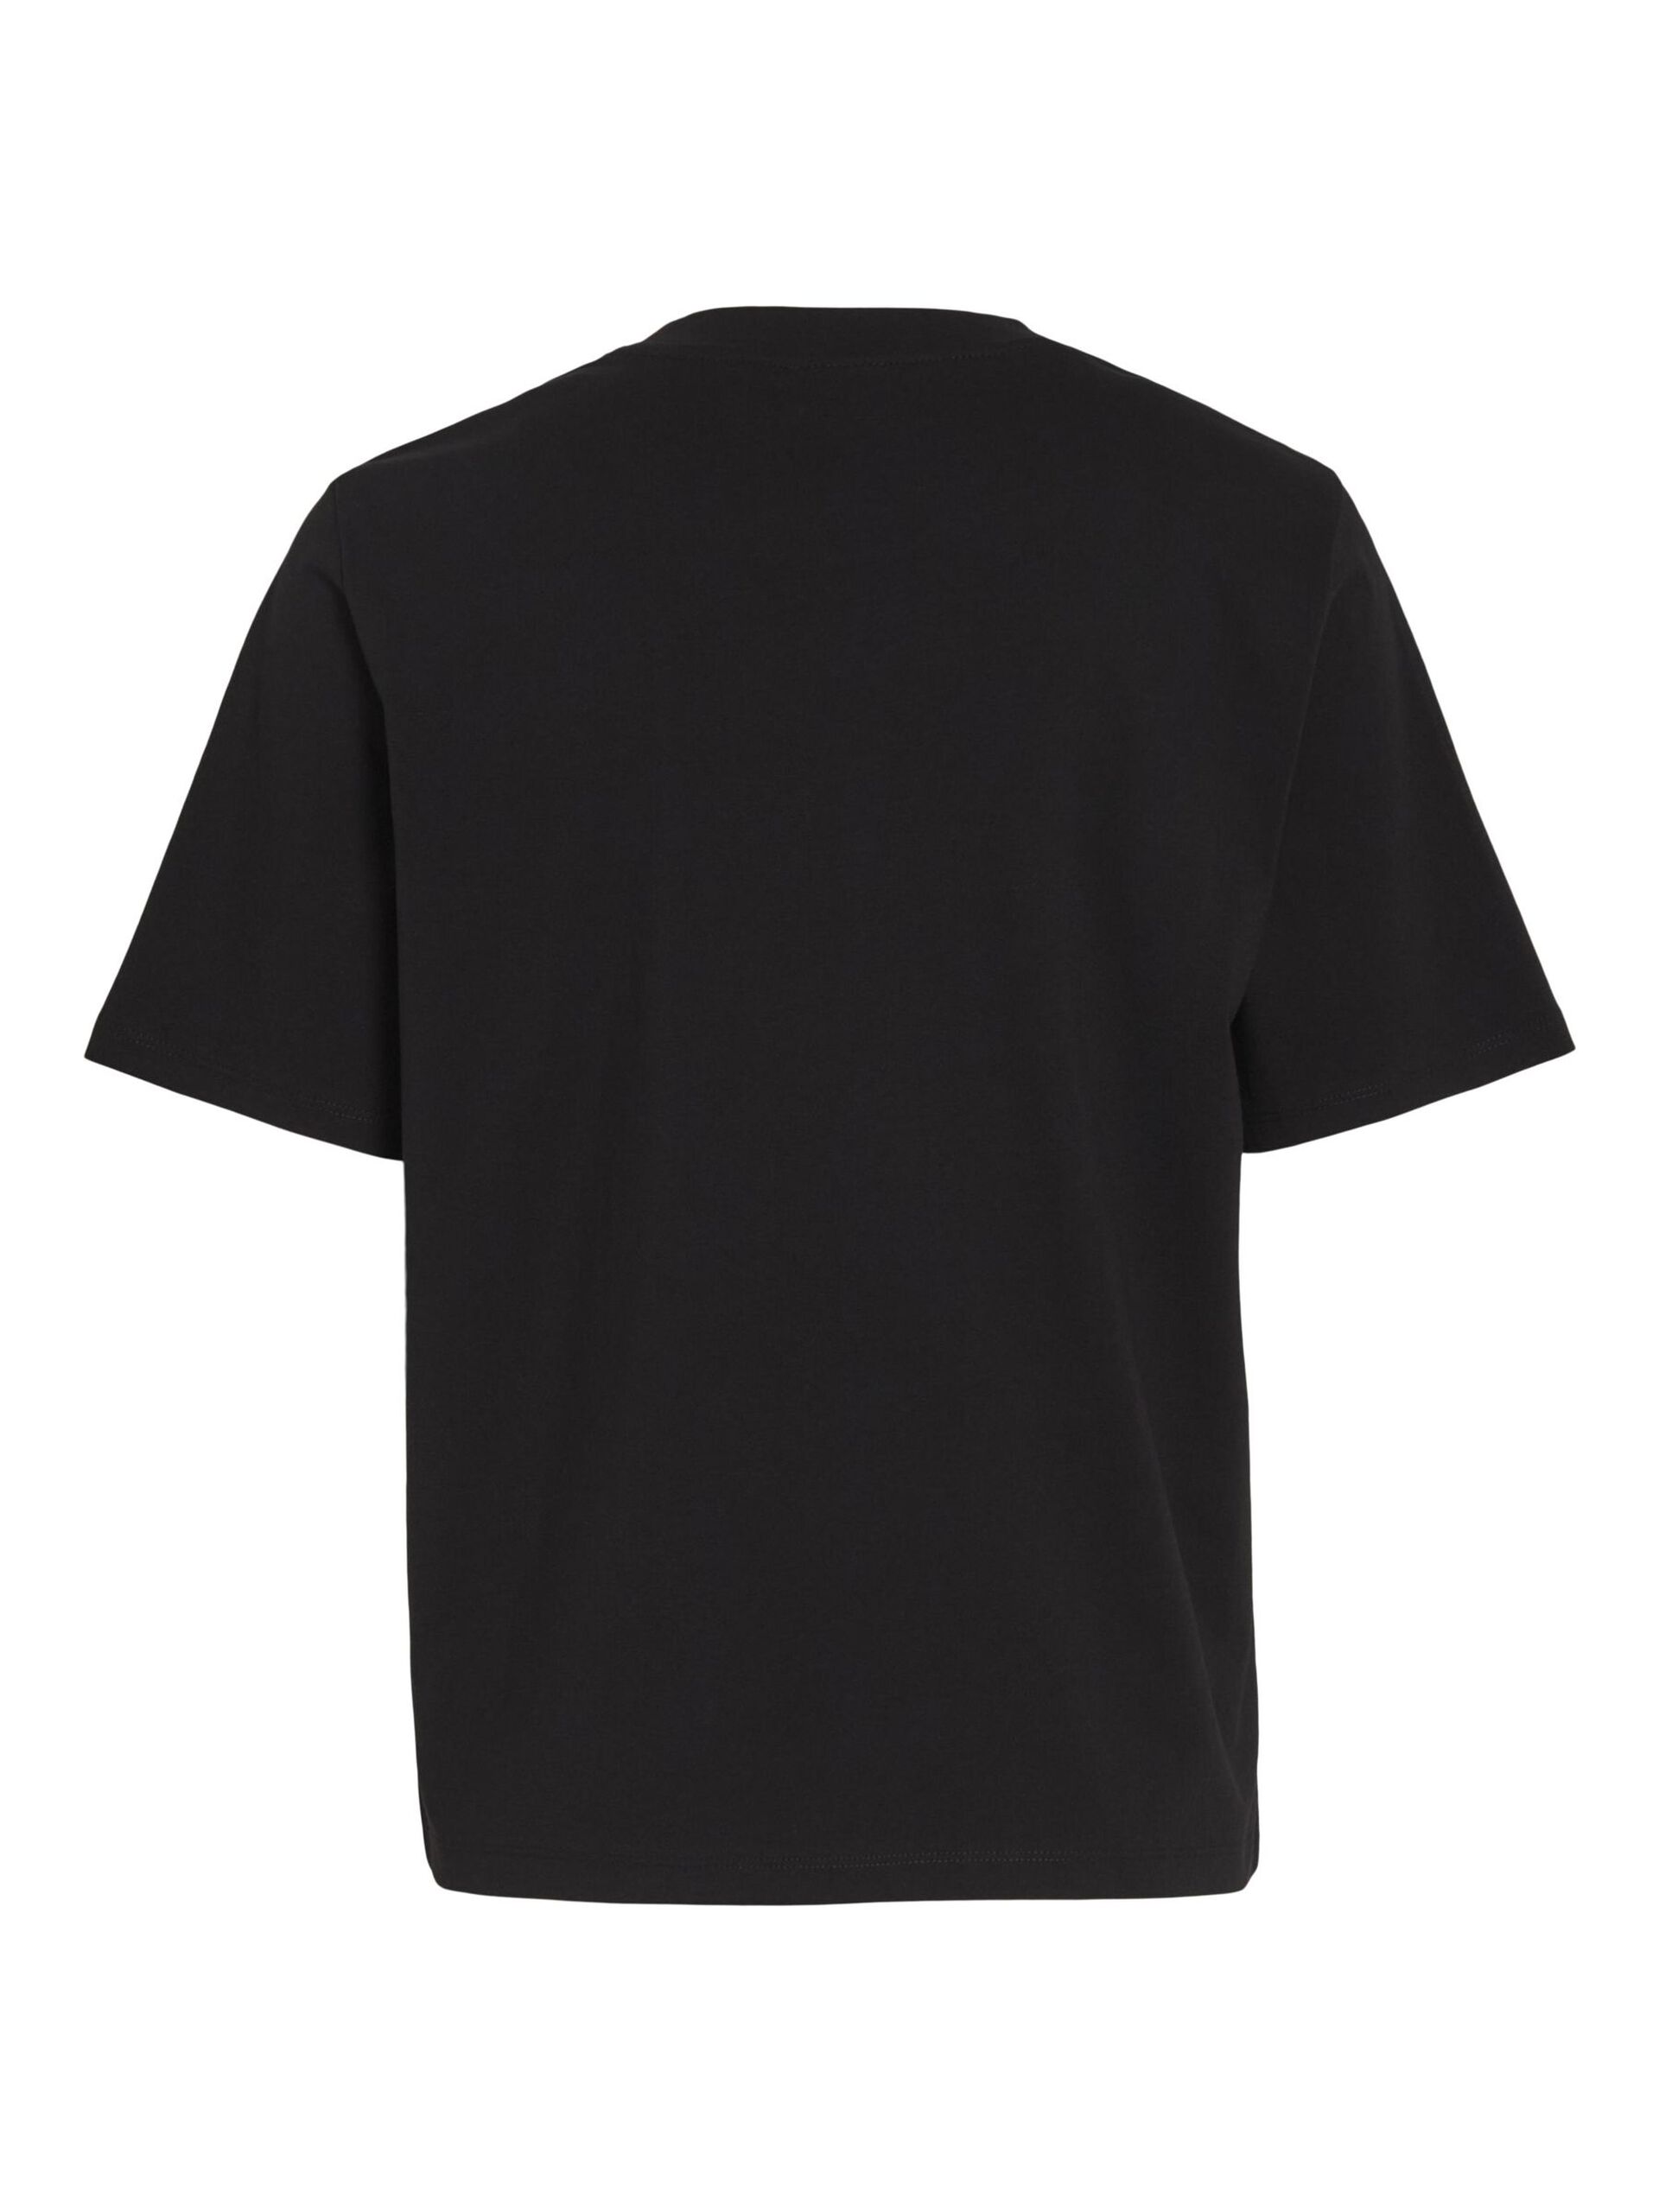 Camiseta básica de algodón modelo Darlene en color negro con cuello redondo y manga corta. Corte cuadrado. Modelo 14089280 de Vila.